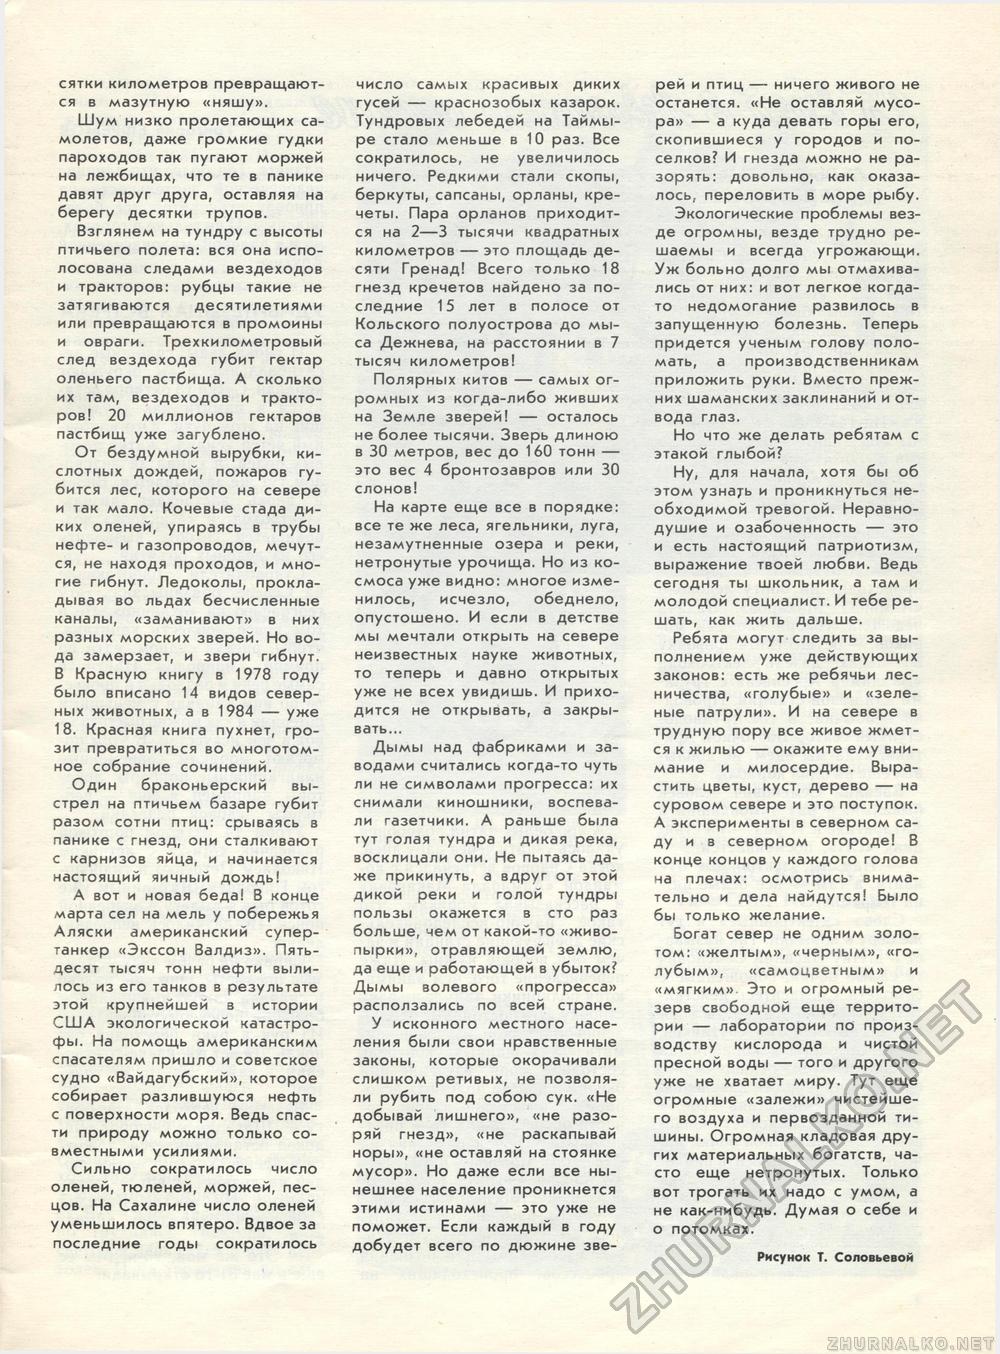  1989-08,  5